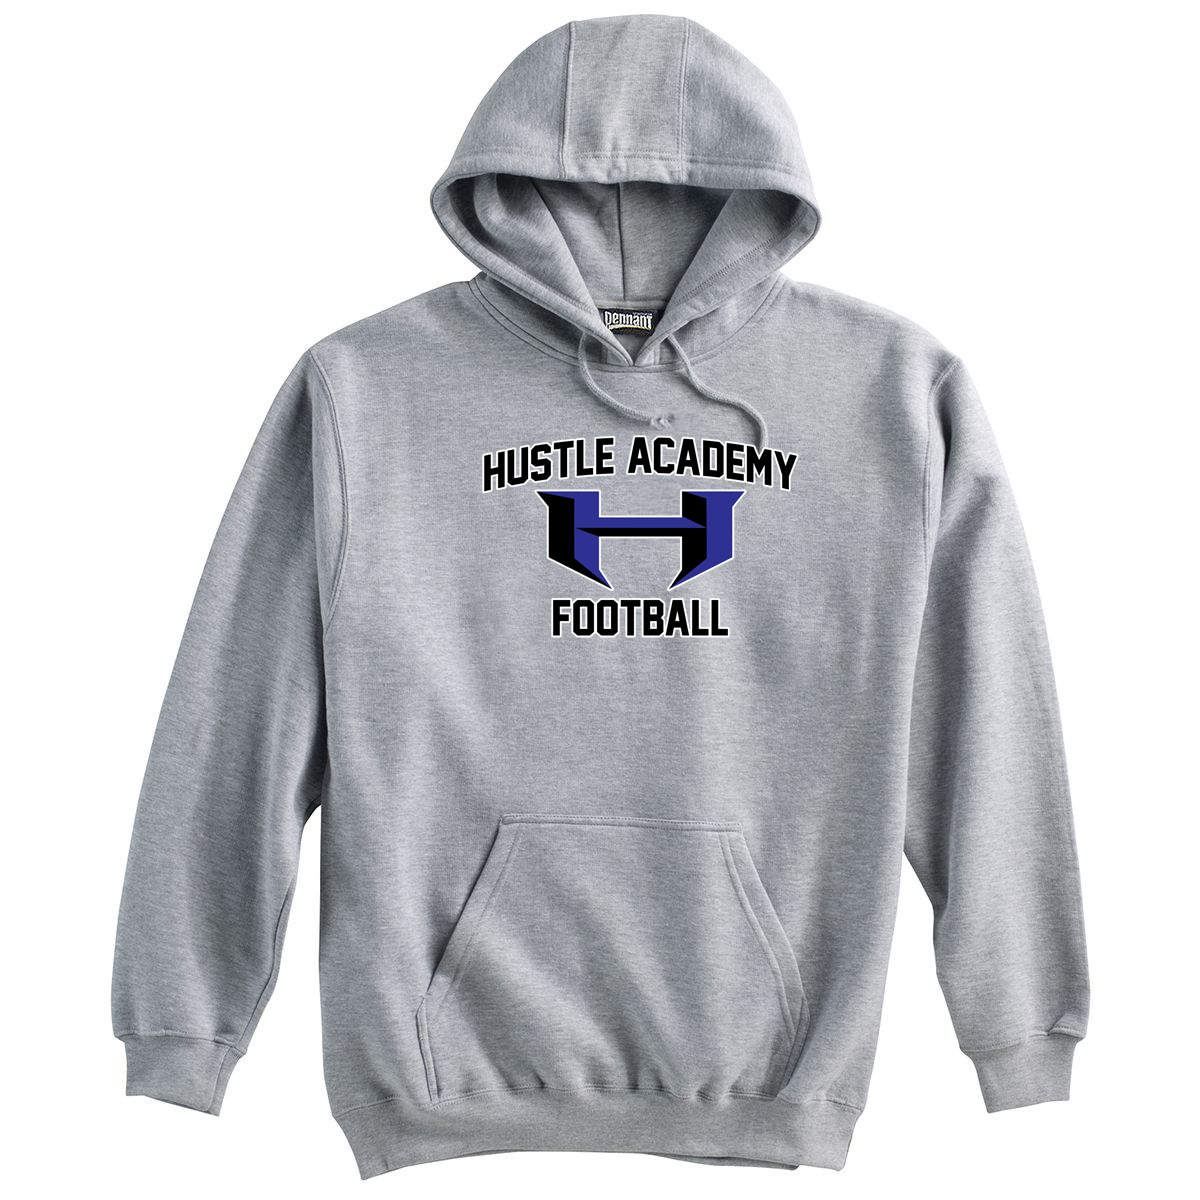 Hustle Academy Football Sweatshirt